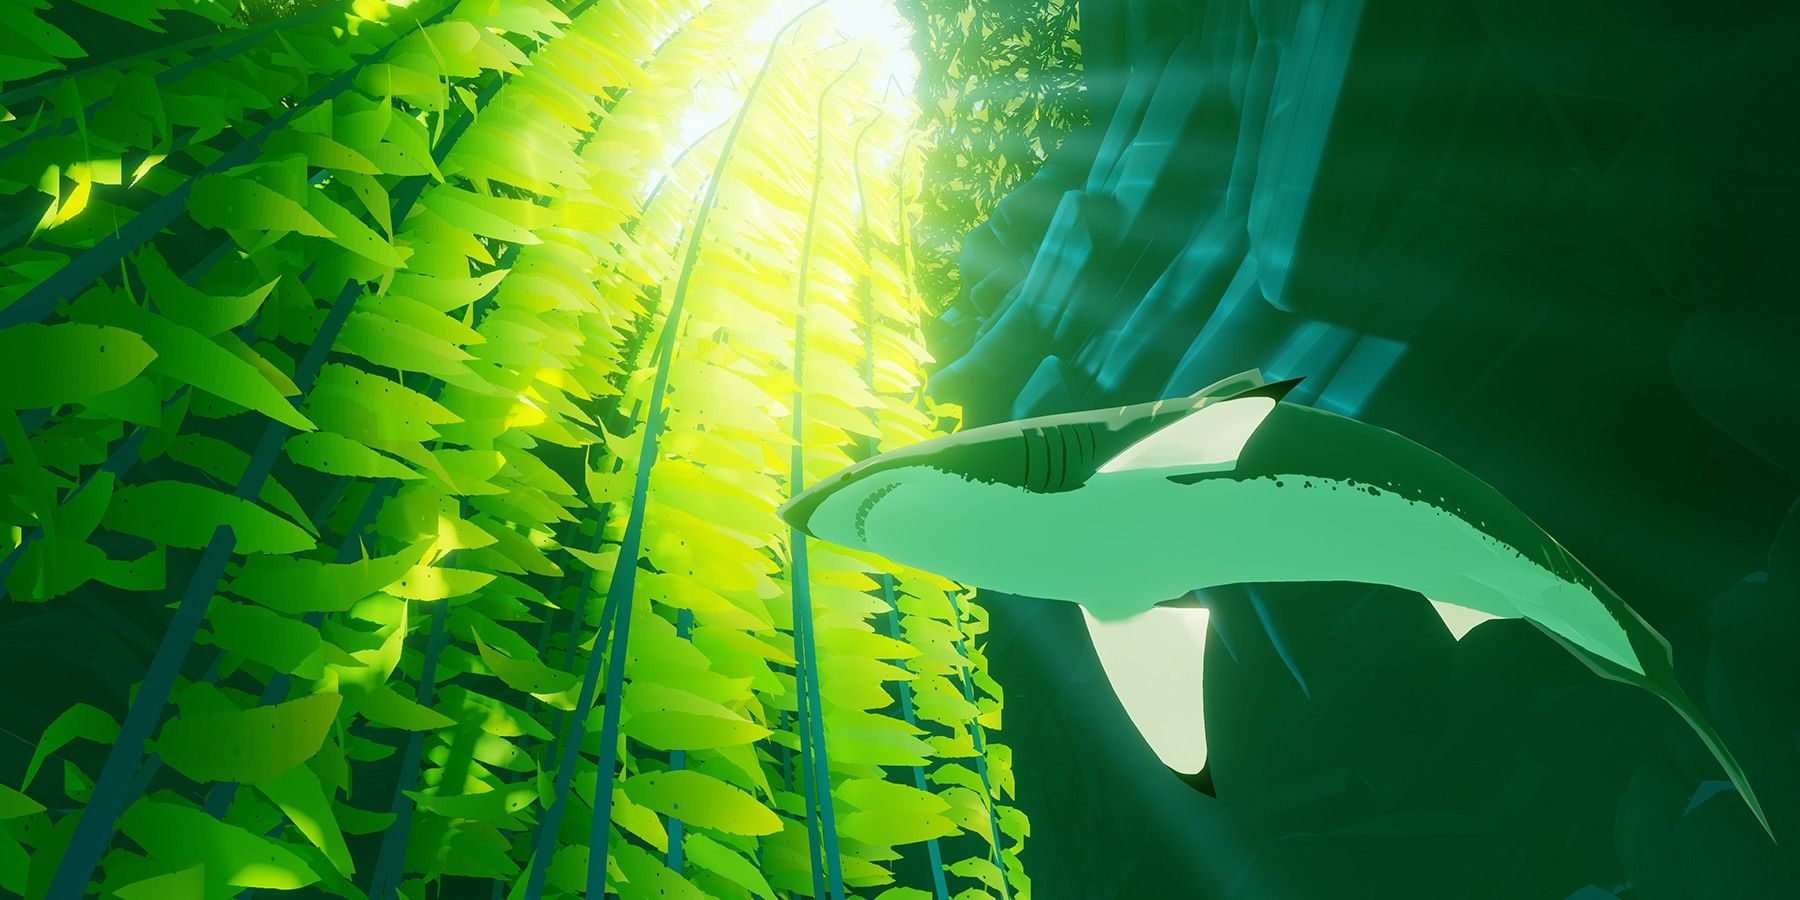 Shark in kelp forest. 